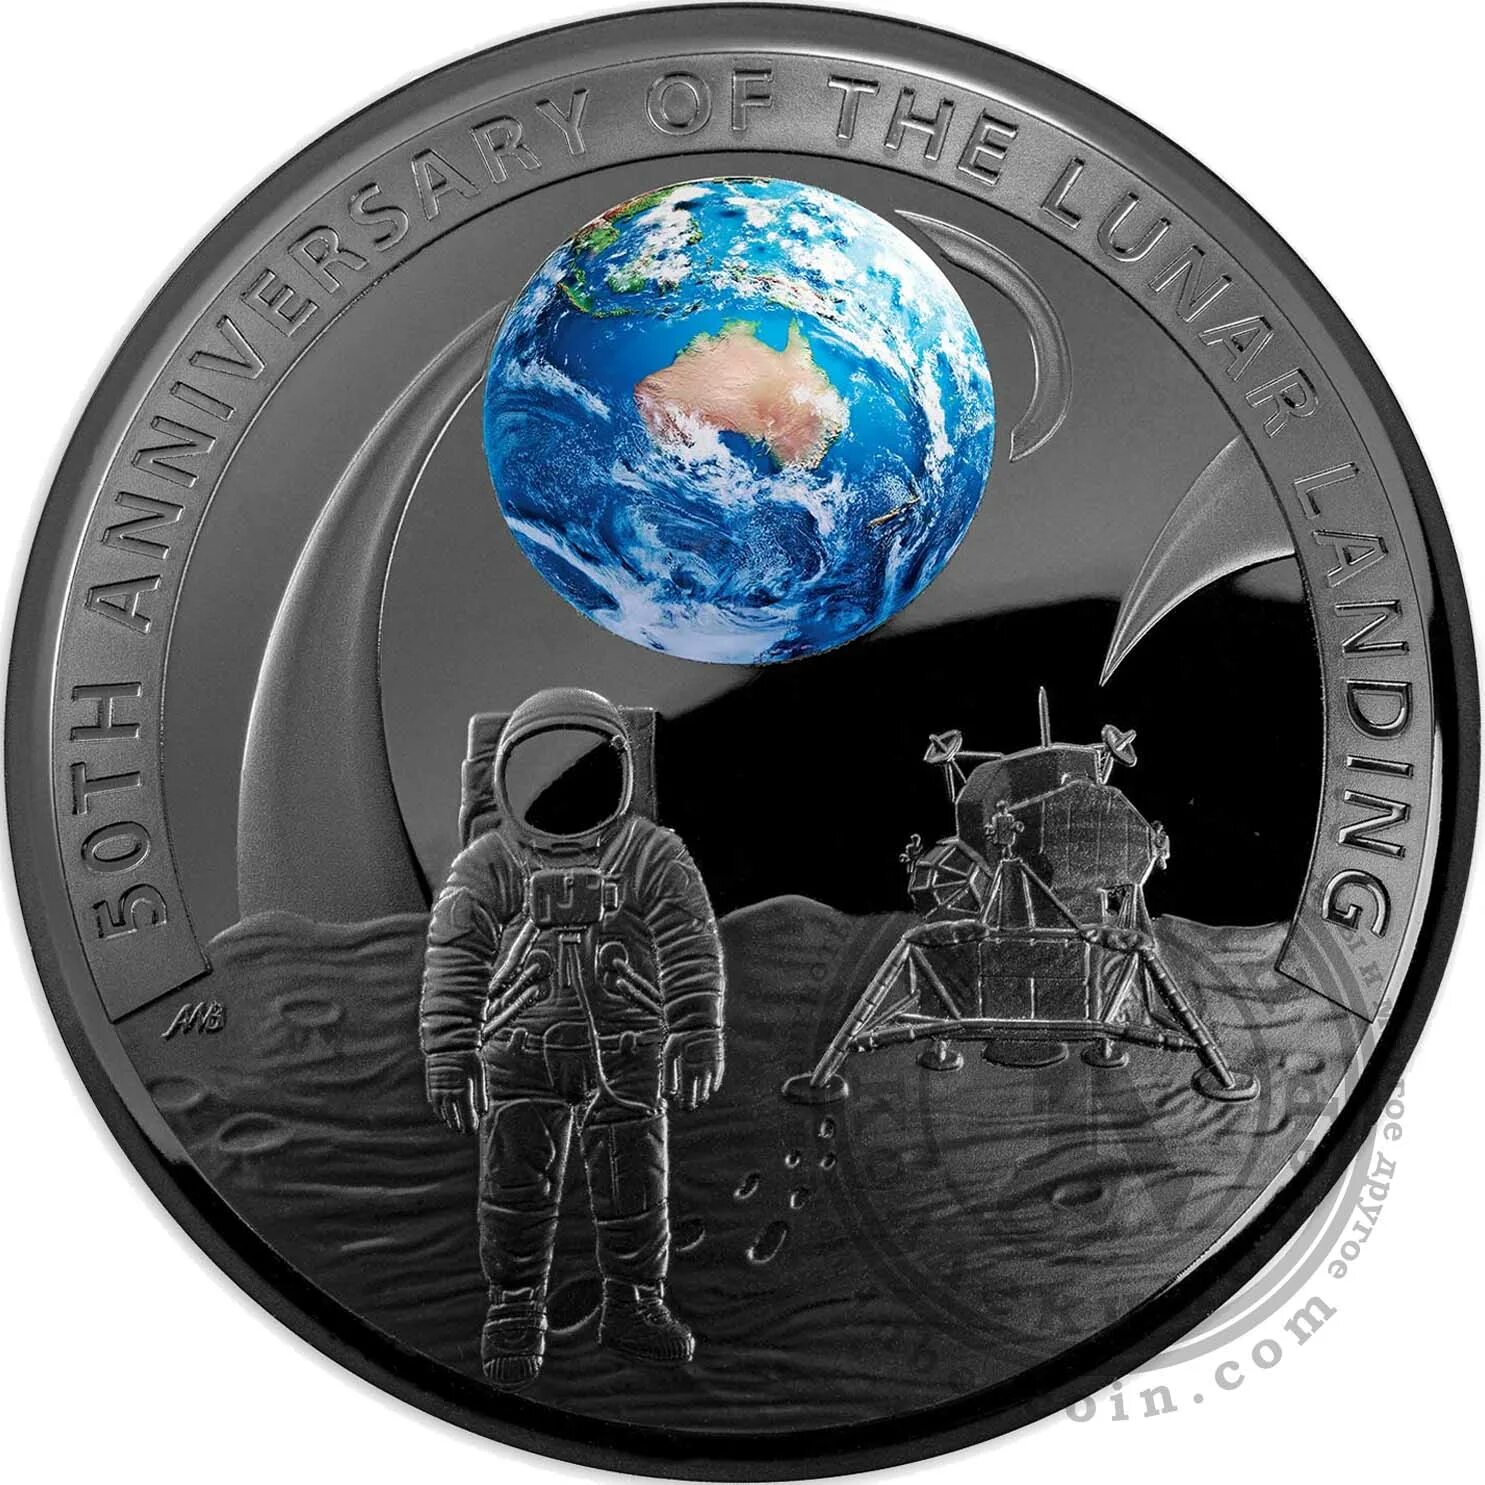 Луна 2019 года. Аполлон 11 Австралия монета. Монета высадка на луну. Монета к 50 летию высадки на луну. Полнолуние в монете.